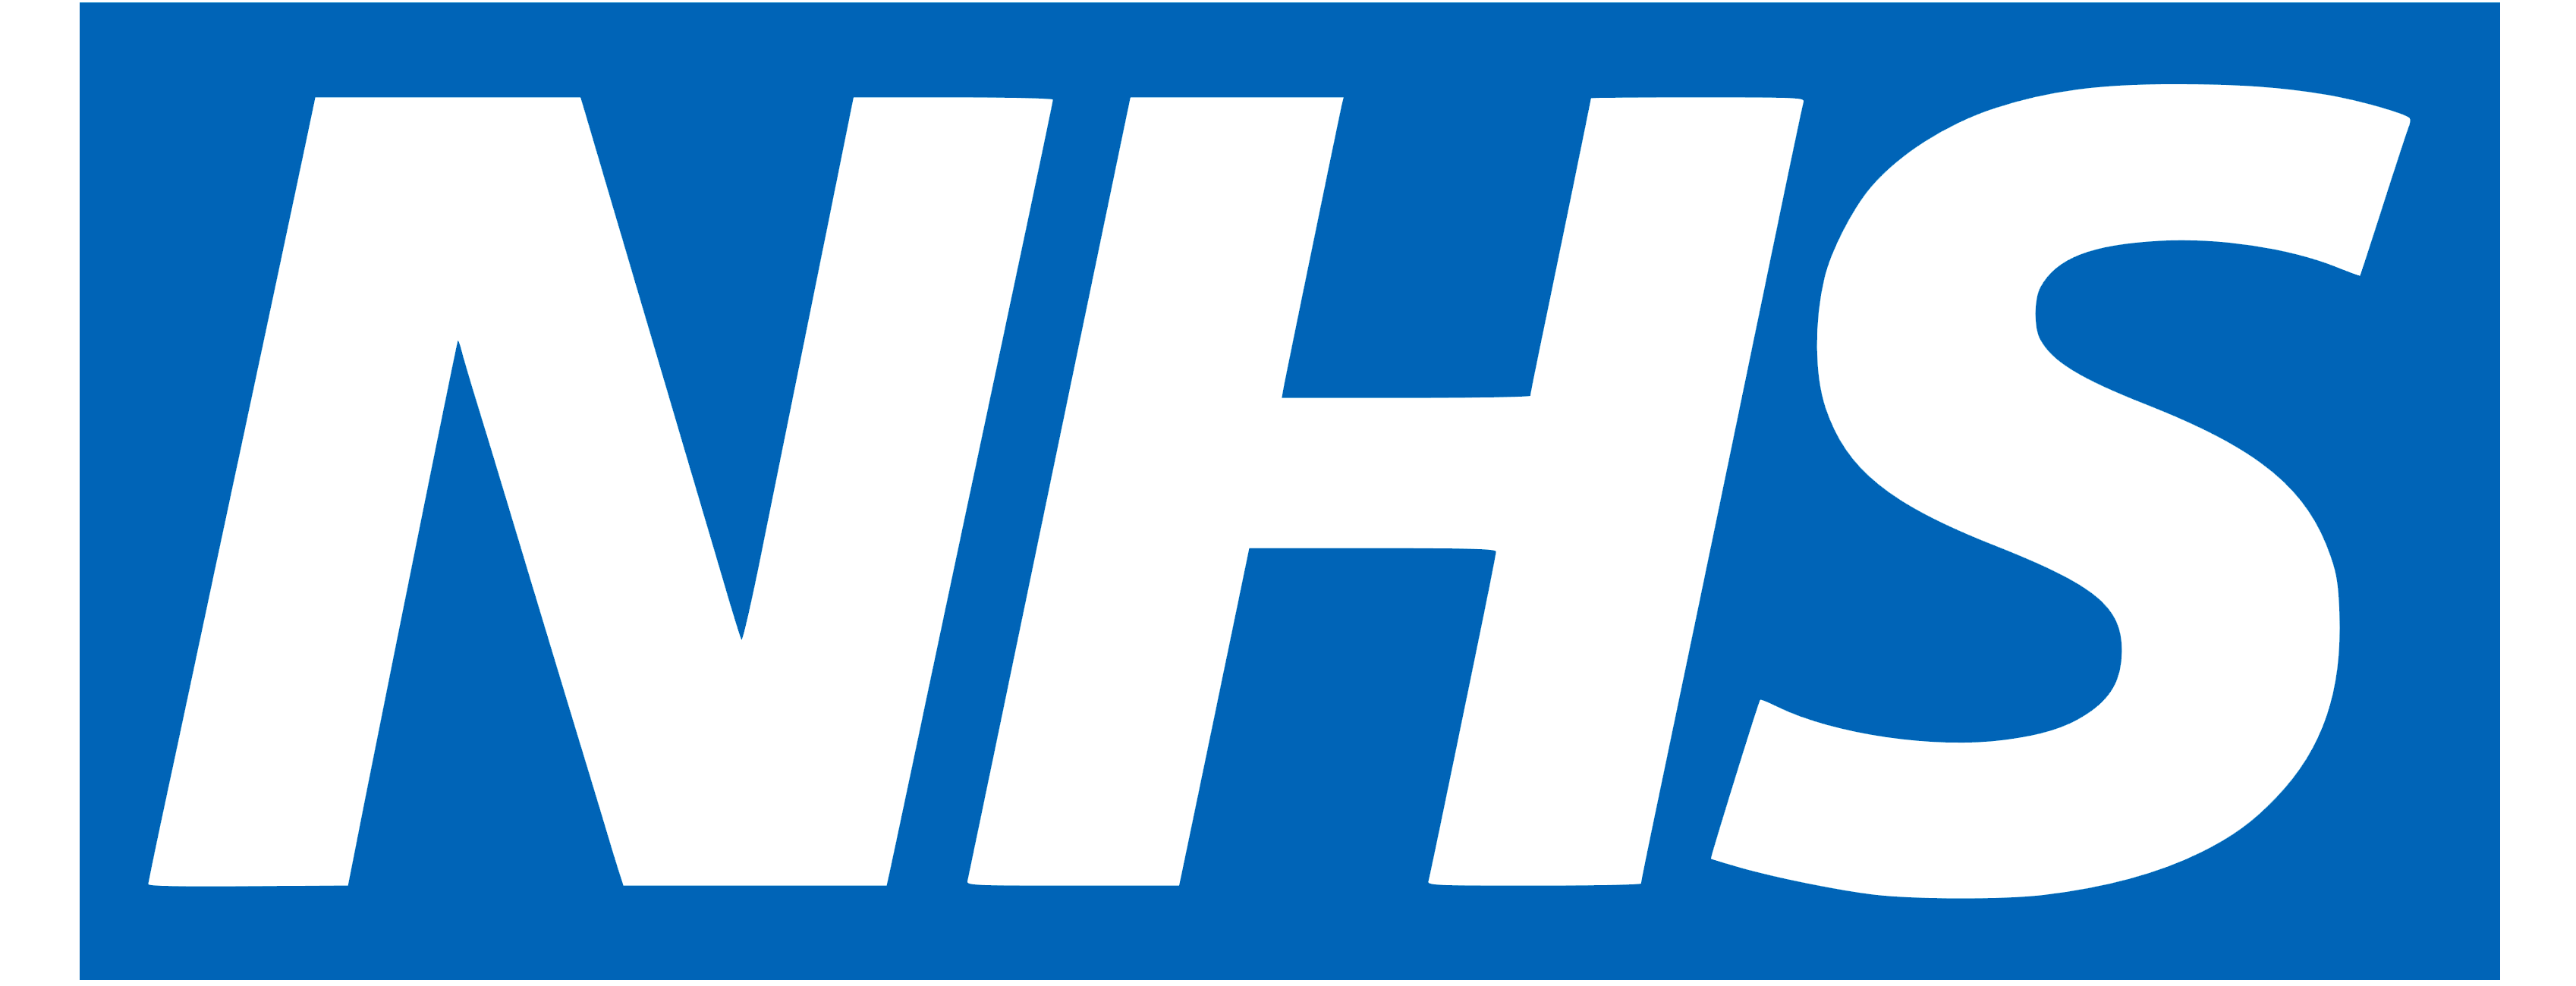 NHS_logo_logotype